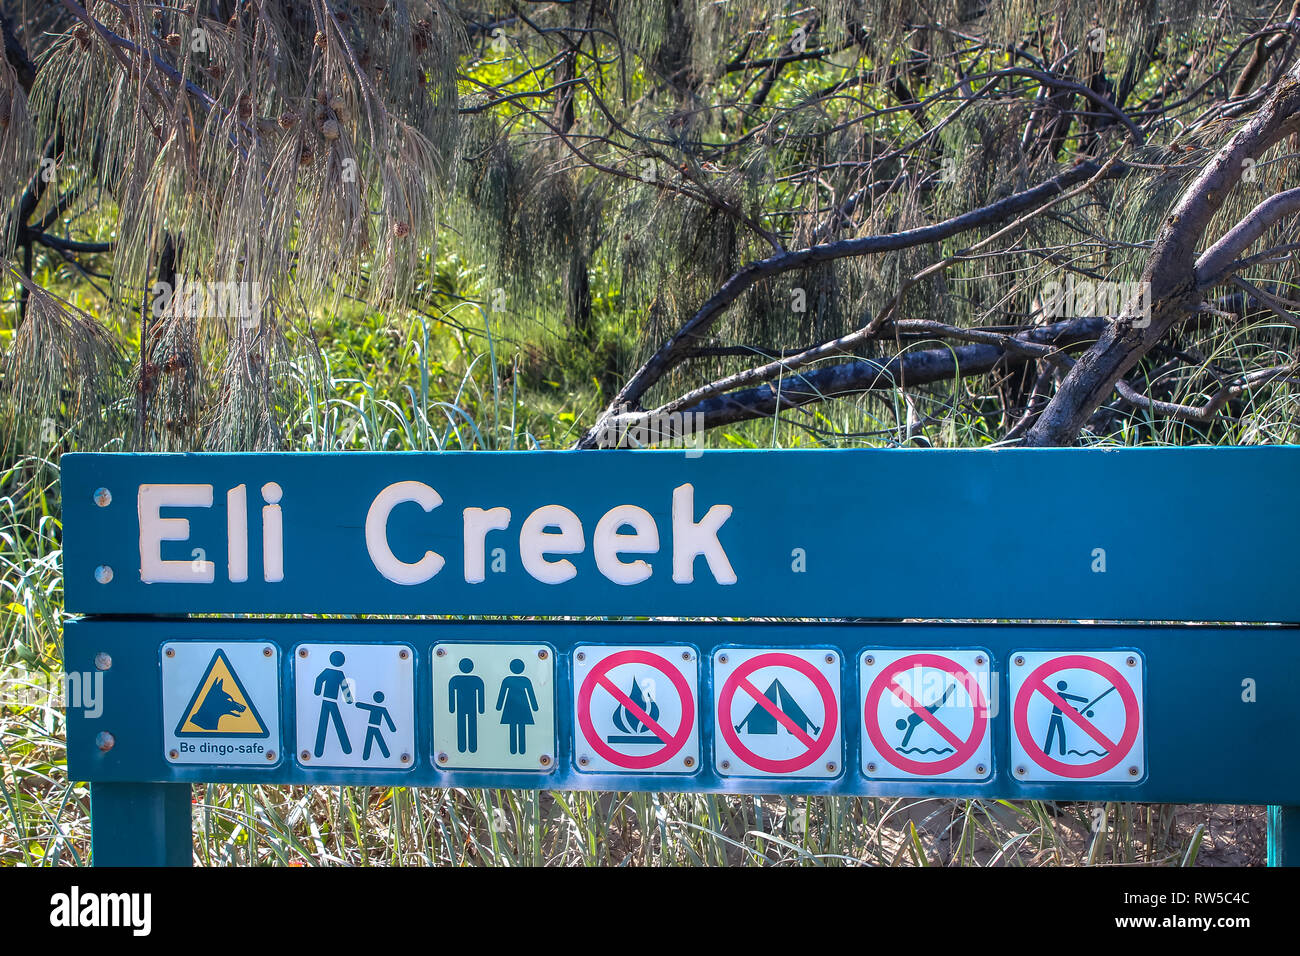 Eli Creek Warnschild auf Fraser Island, Dingo, Safe, reisen Abenteuer backpacker Reisen Australien Stockfoto